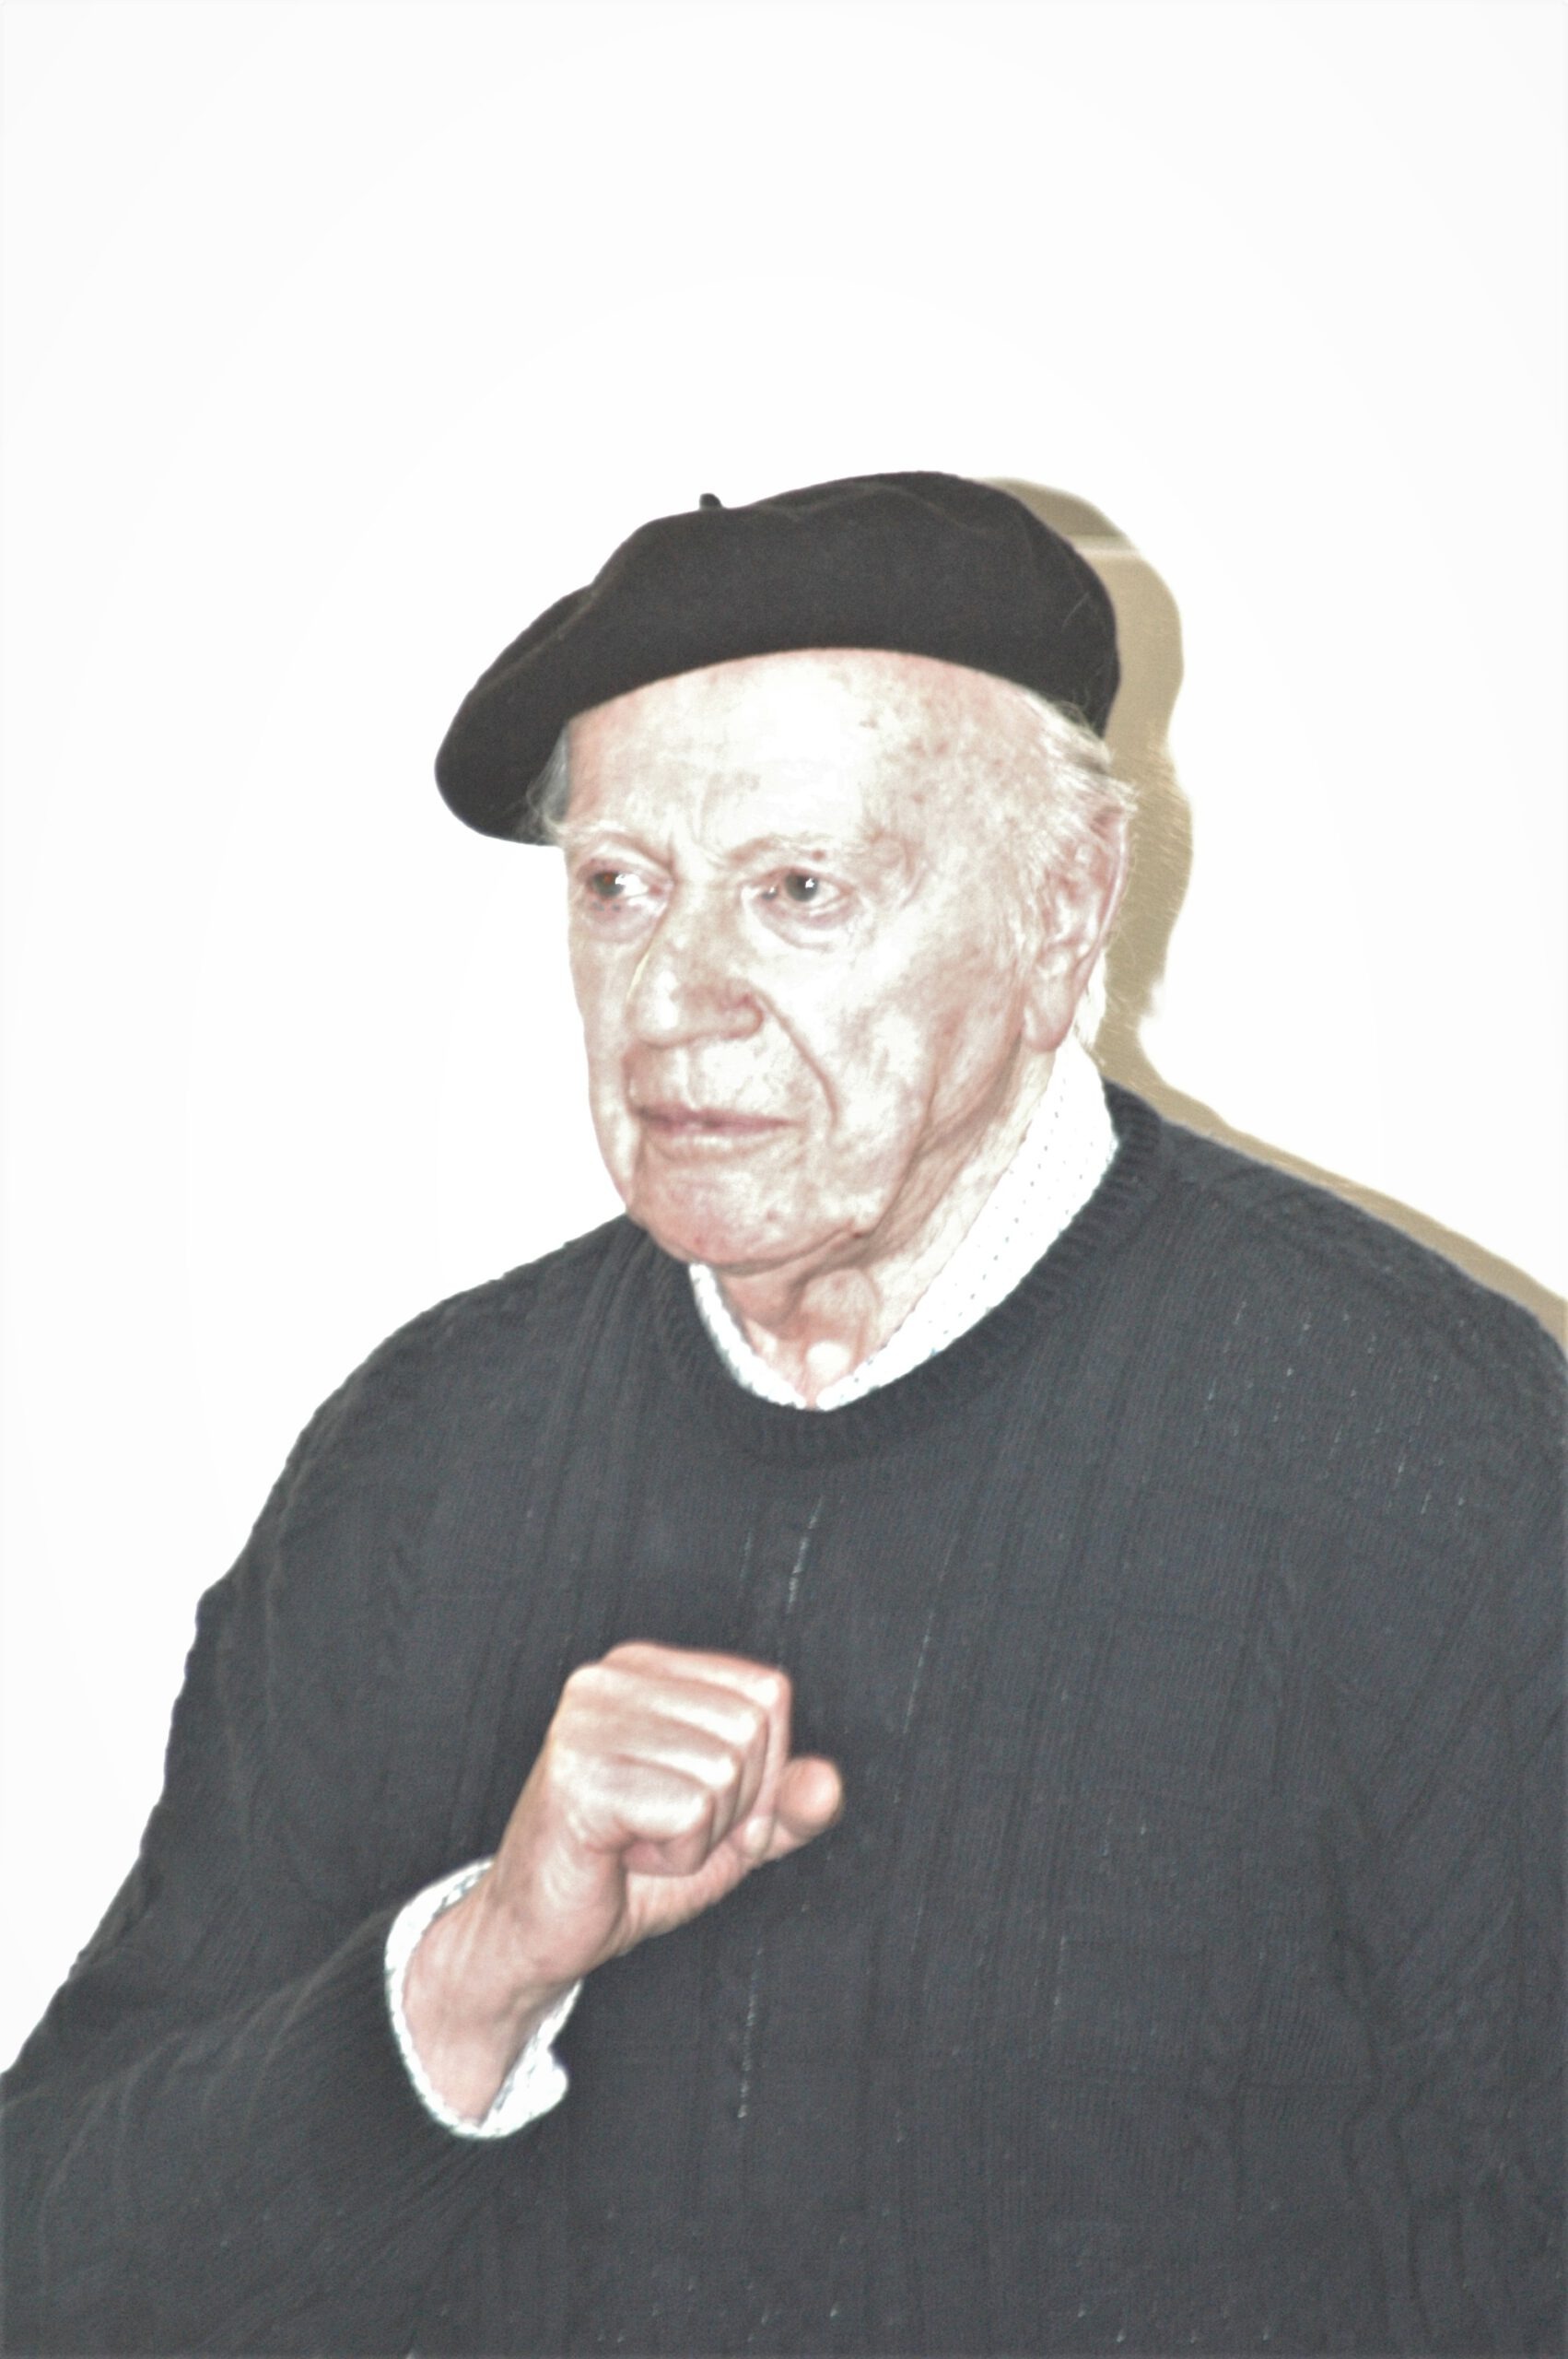 2006: Портрет Эгона Альтдорфа, сделанный на праздновании 40-летия посвящения синагоги. Фотограф: Игорь Айзенштат. Коллекция Еврейской Общины Висбадена